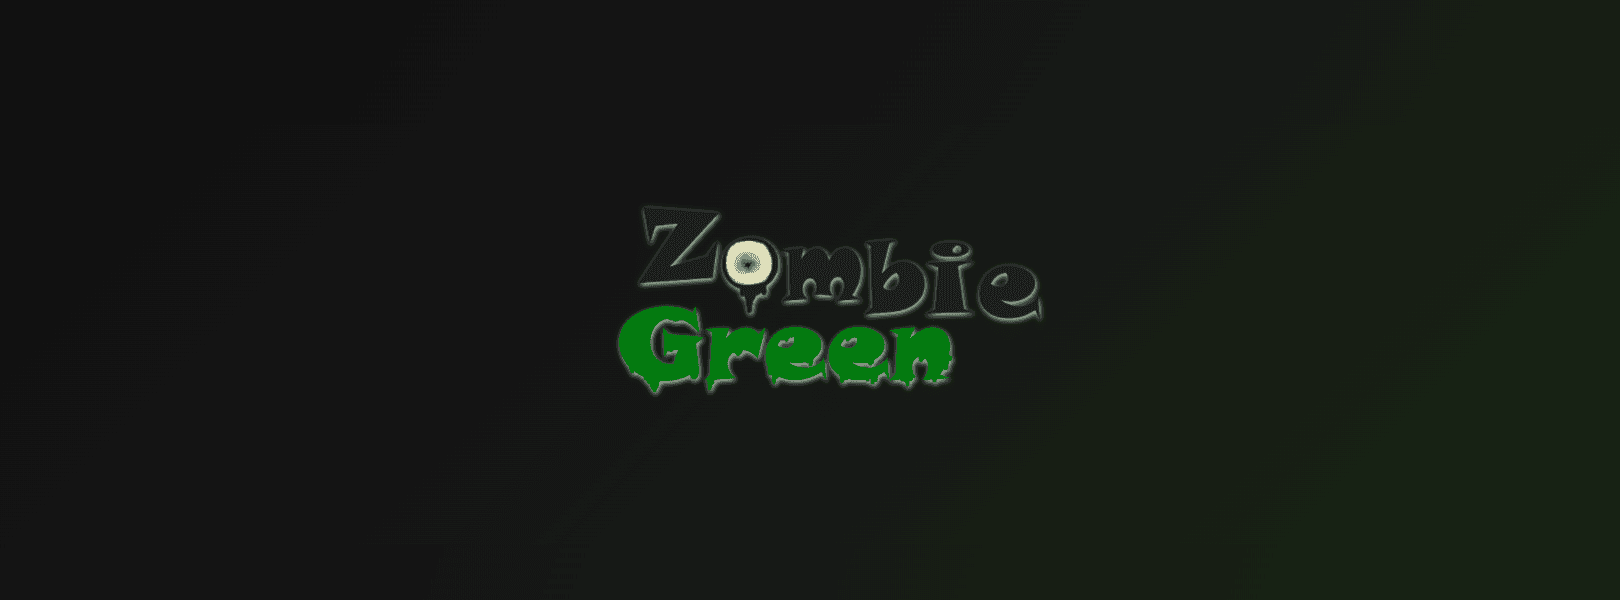 Green Zombie